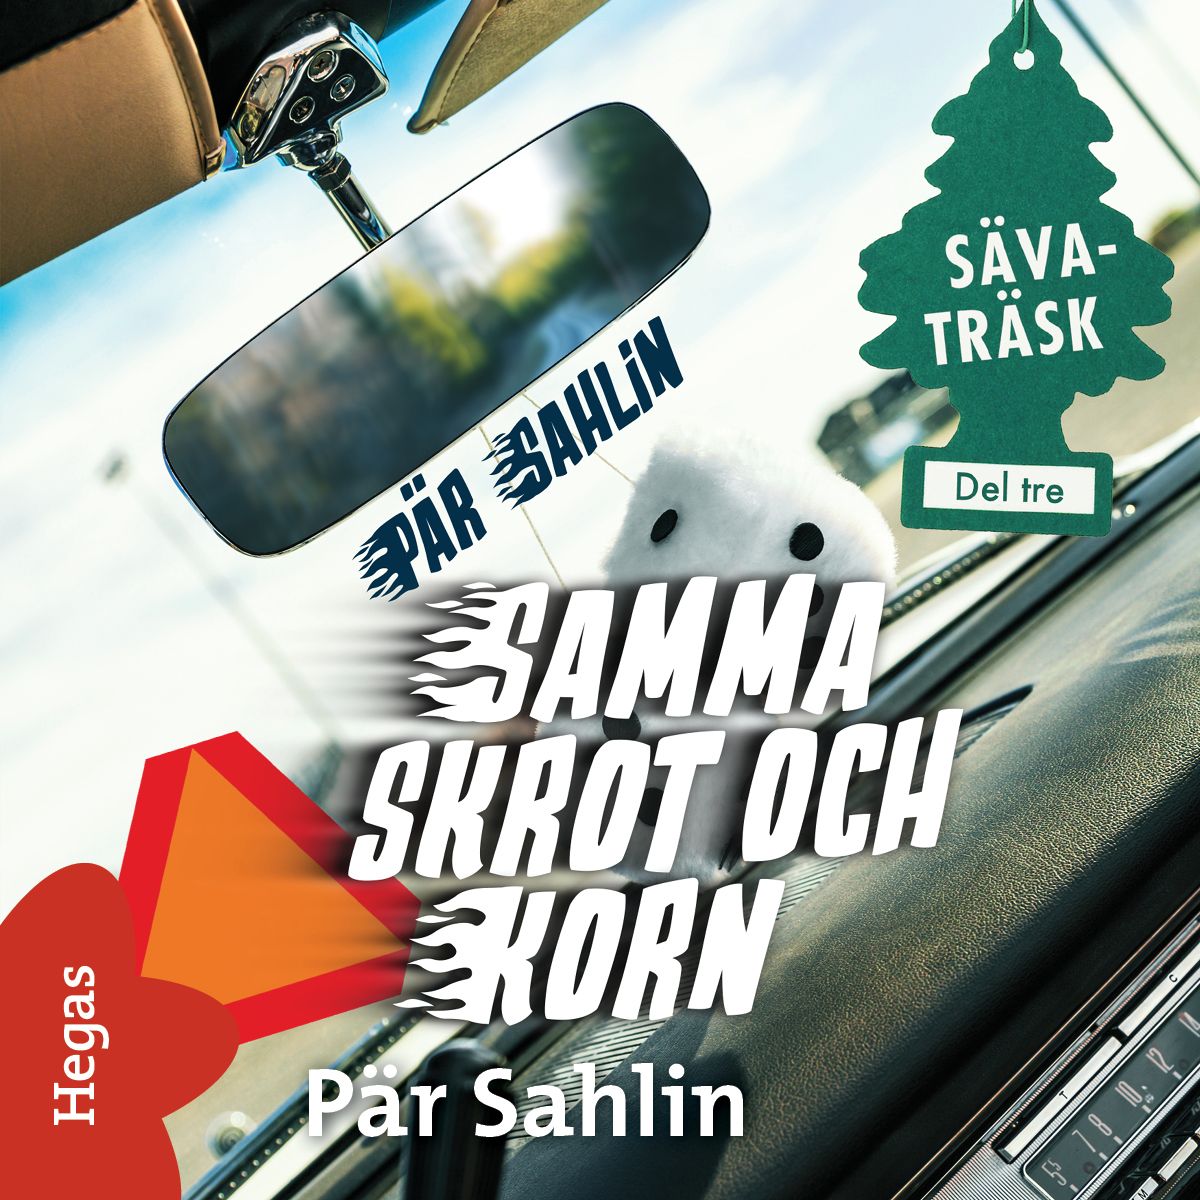 Samma skrot och korn, audiobook by Pär Sahlin